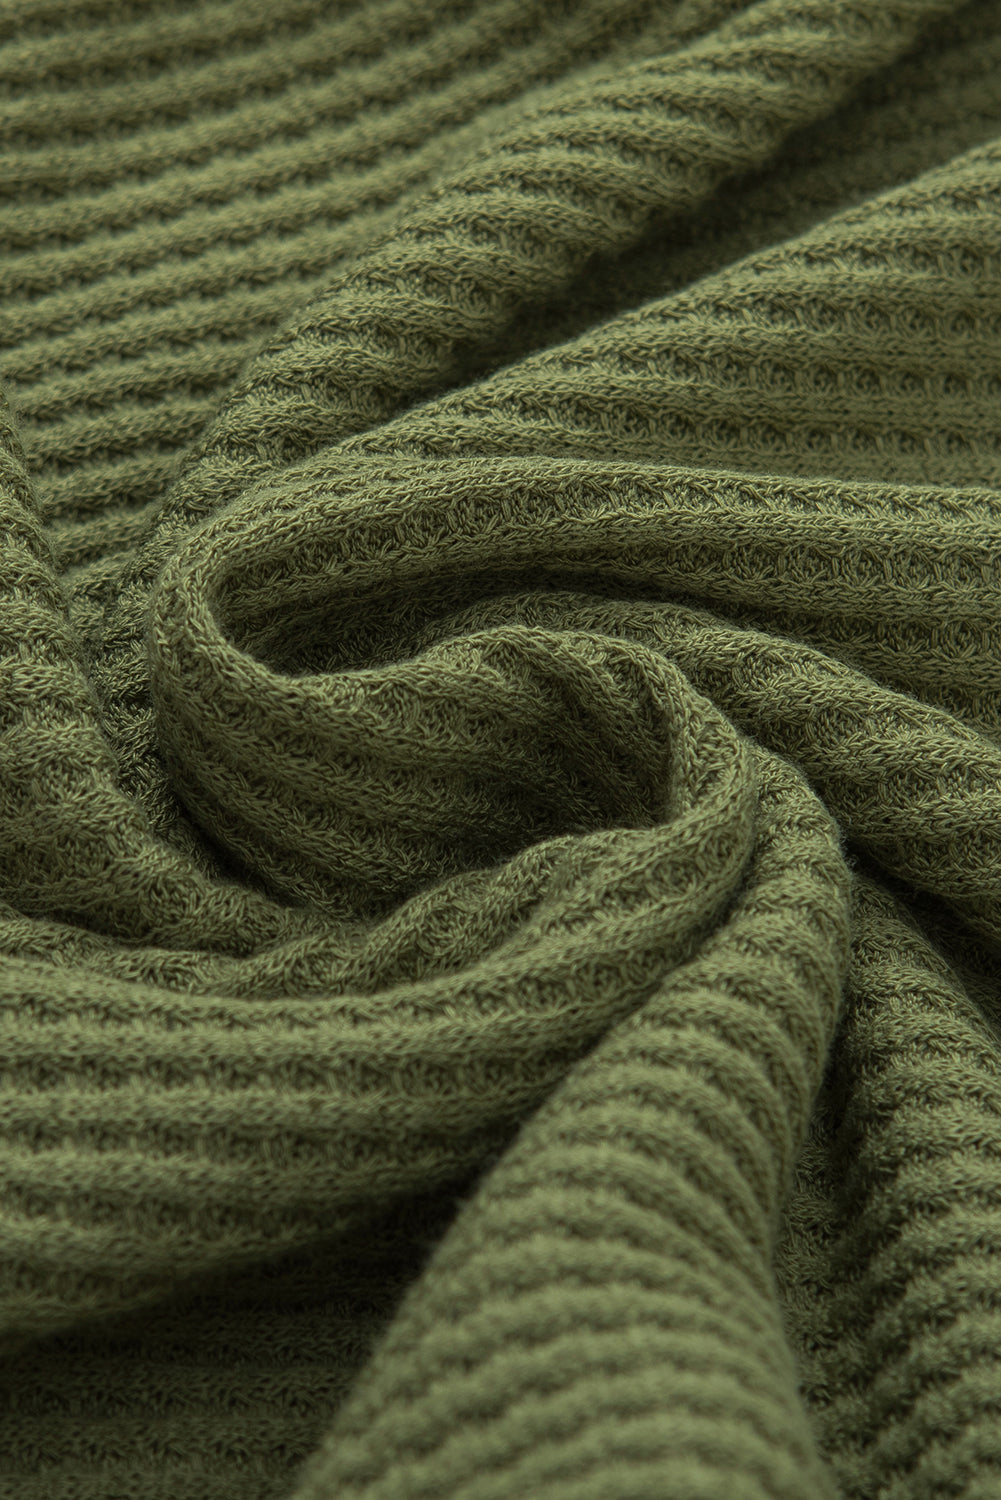 Haut à manches longues en tricot texturé vert jungle, col en V, poignets boutonnés